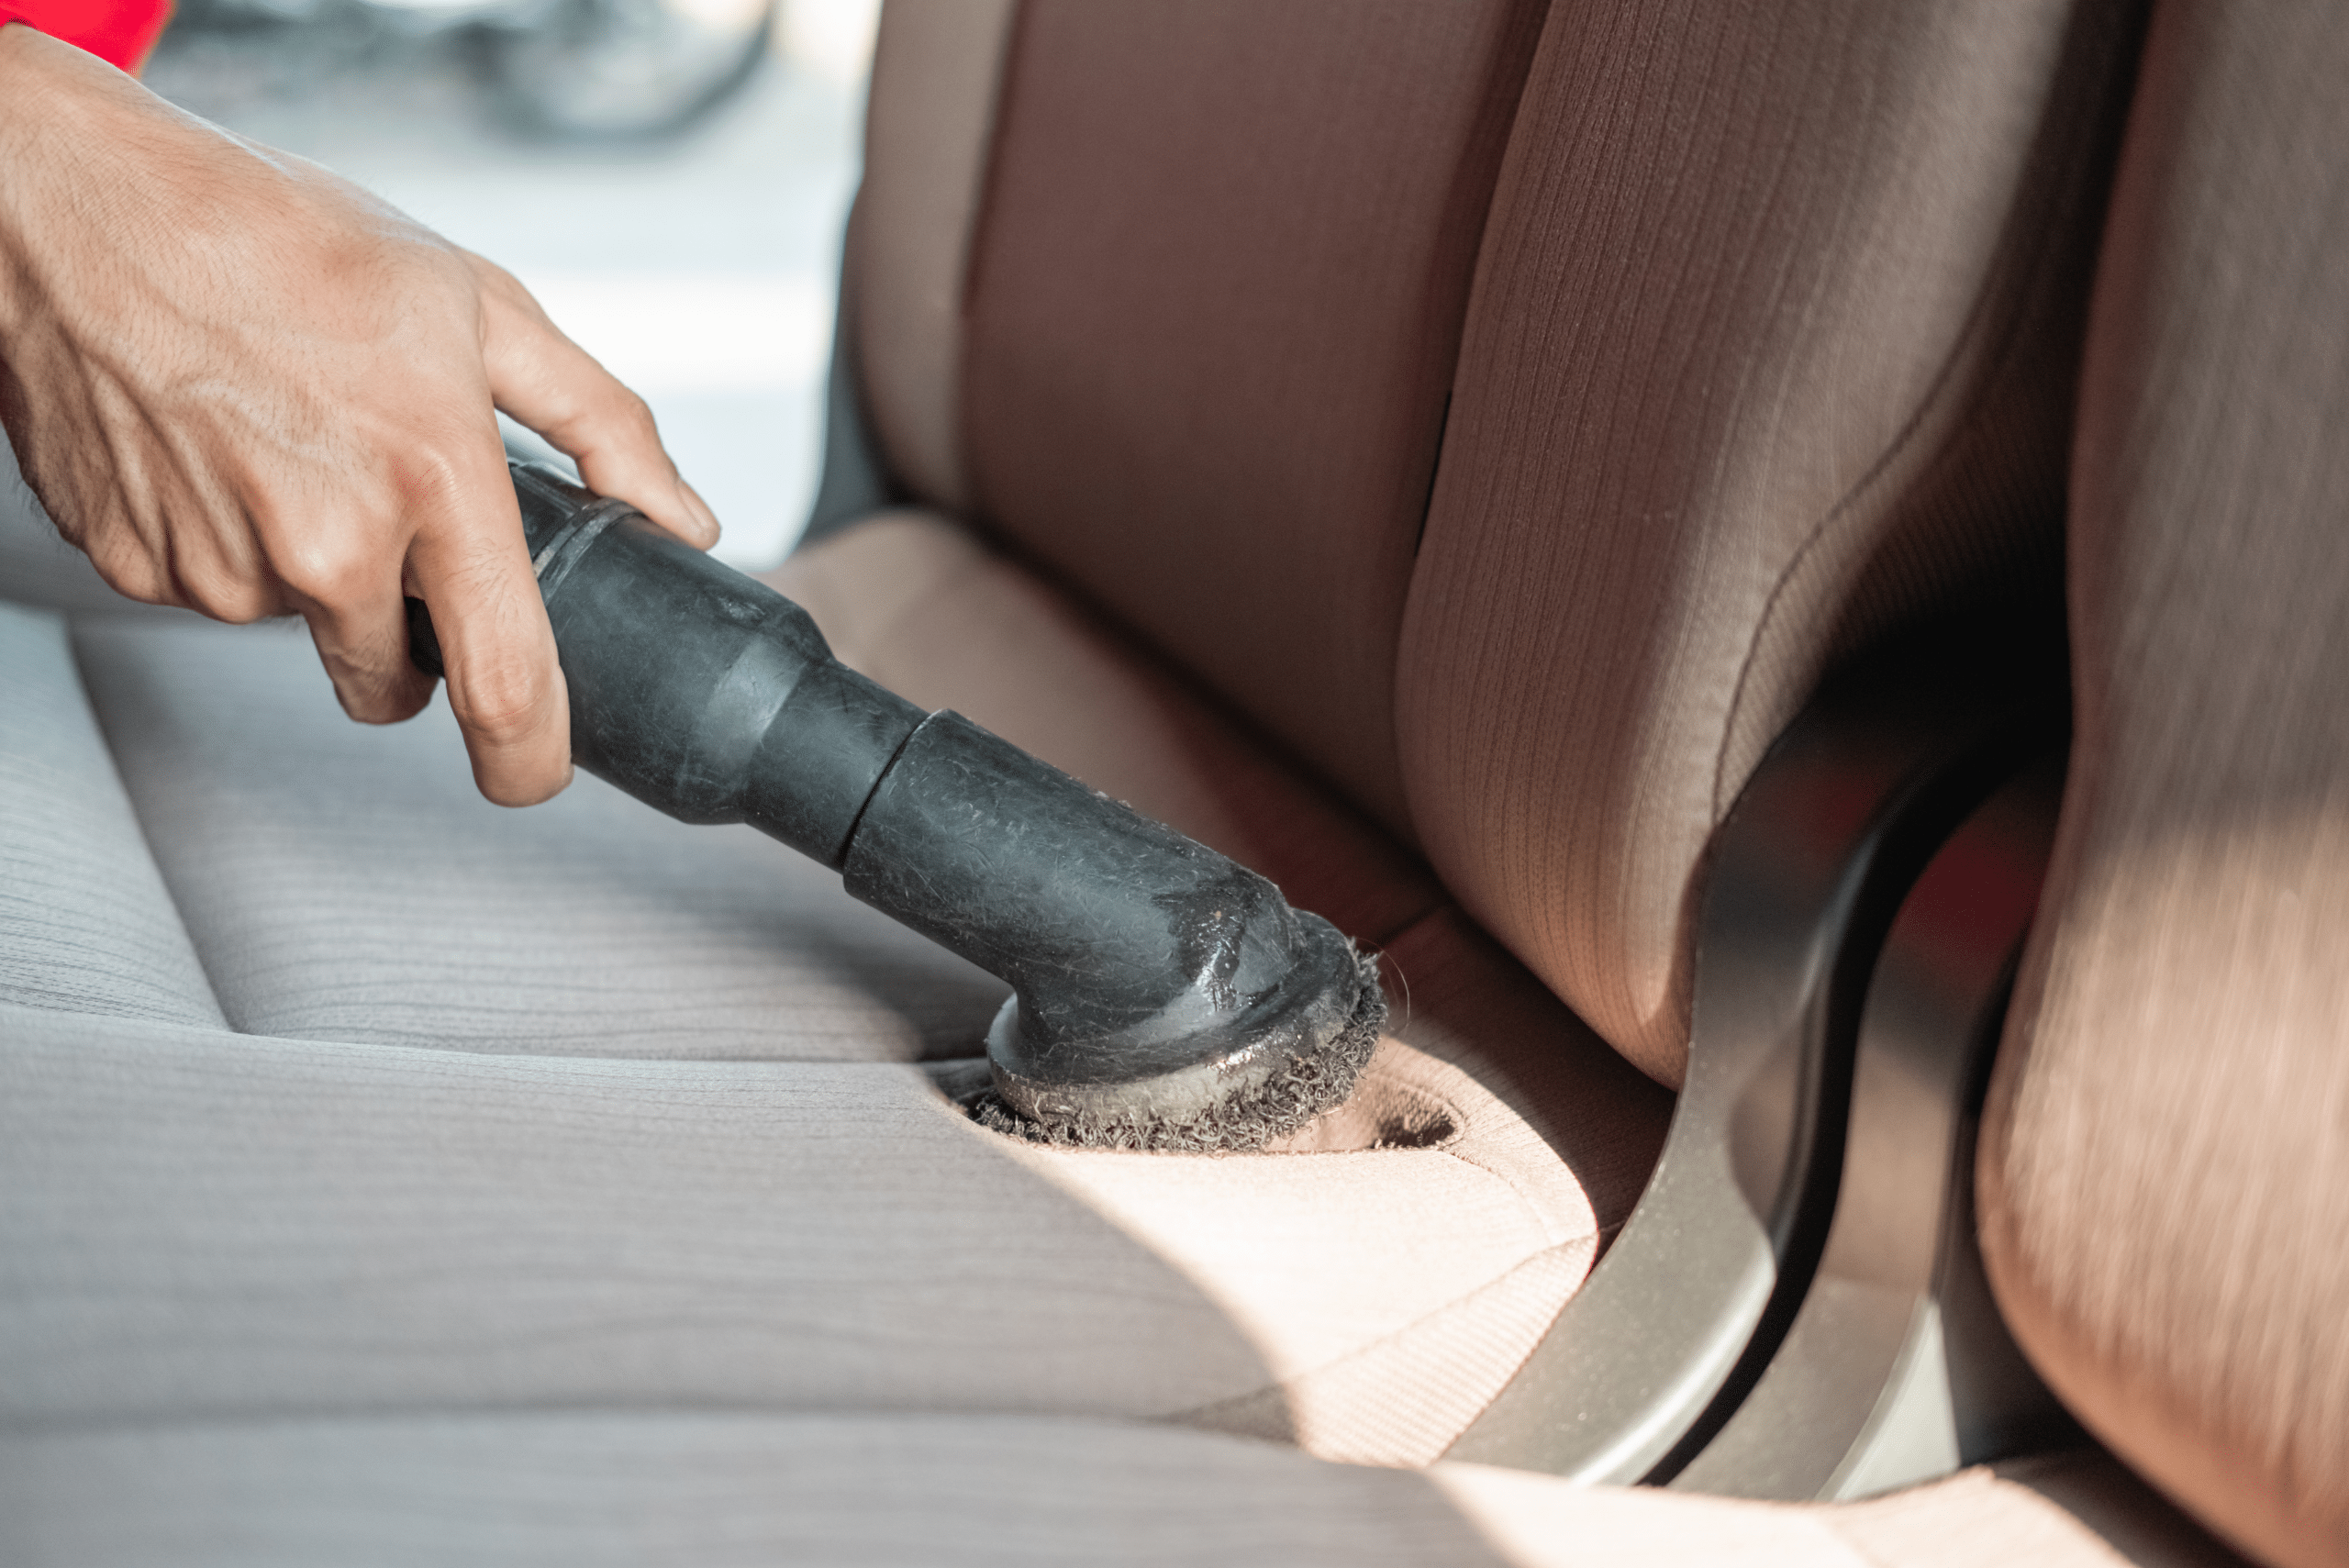 Vacuuming cloth car seats.